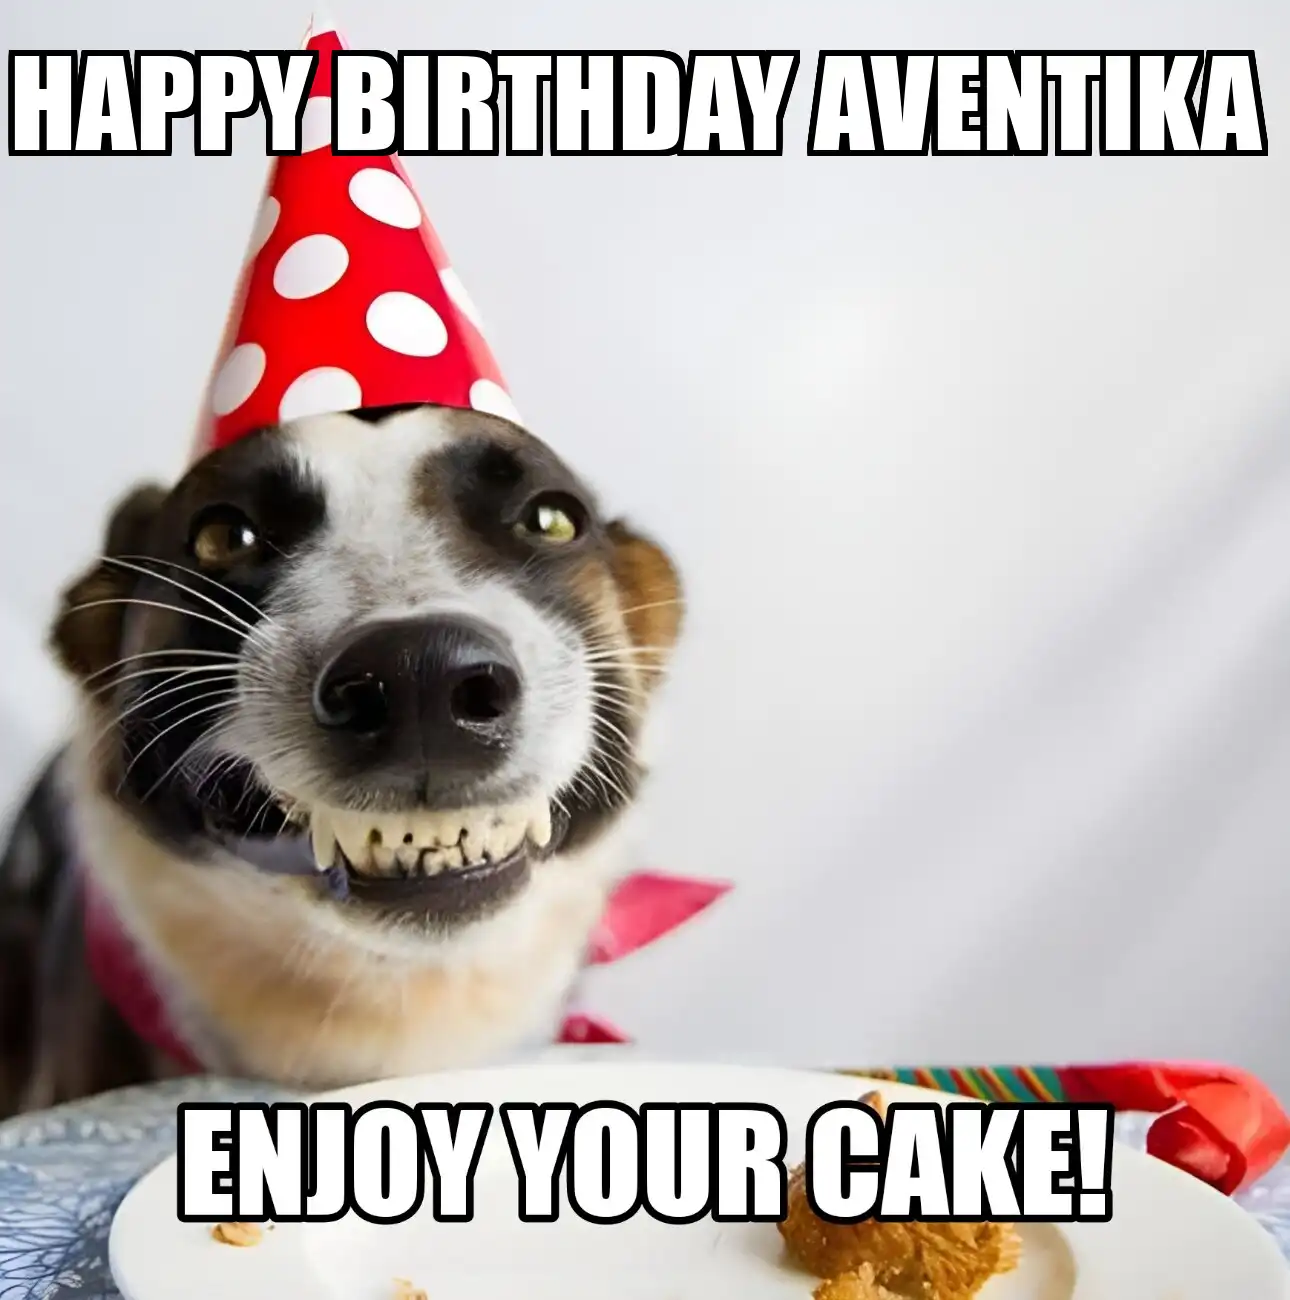 Happy Birthday Aventika Enjoy Your Cake Dog Meme